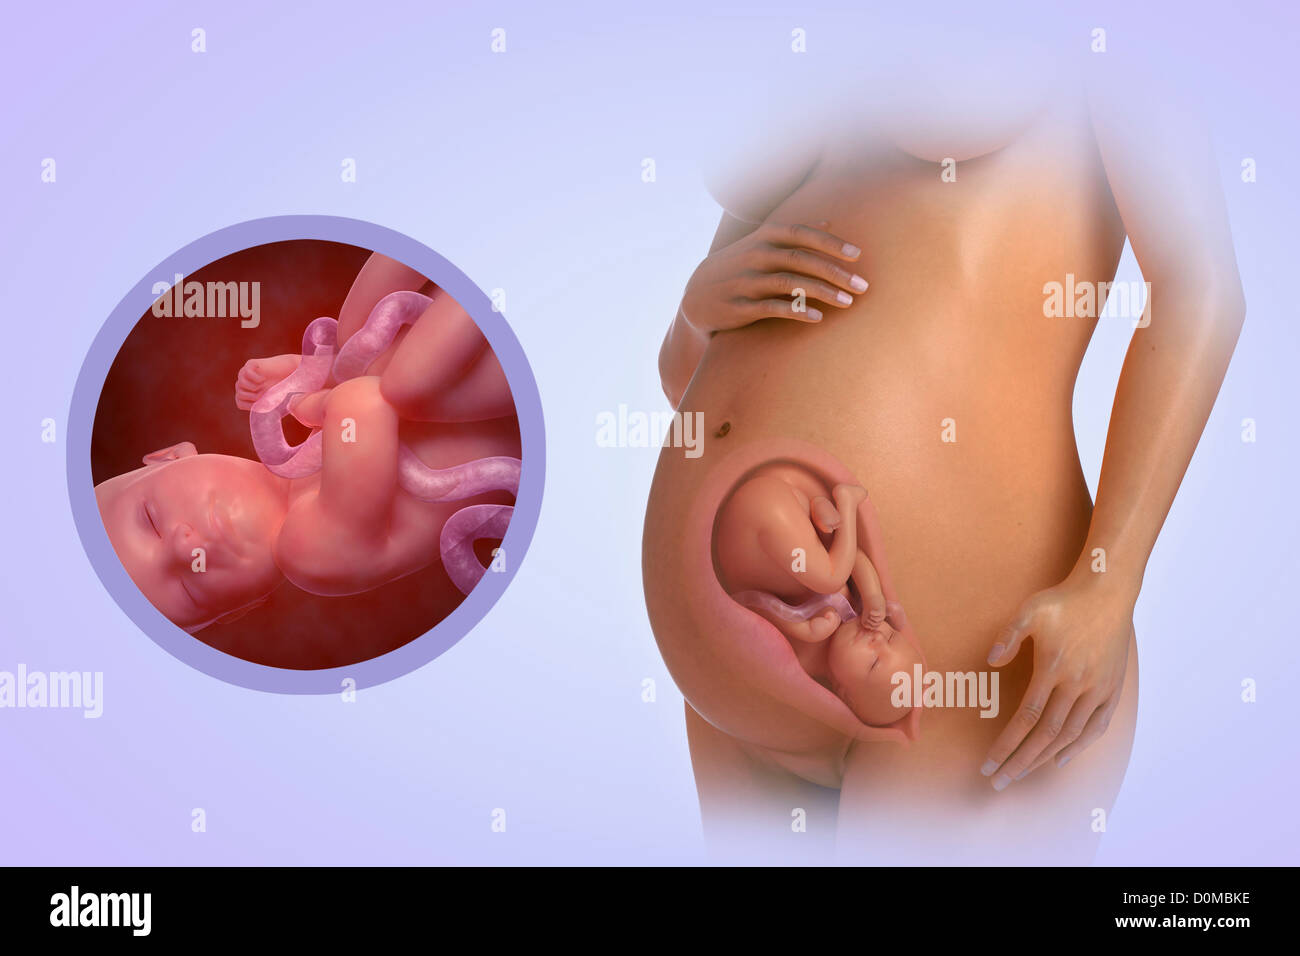 Un modèle humain montrant la grossesse à la semaine 33. Banque D'Images